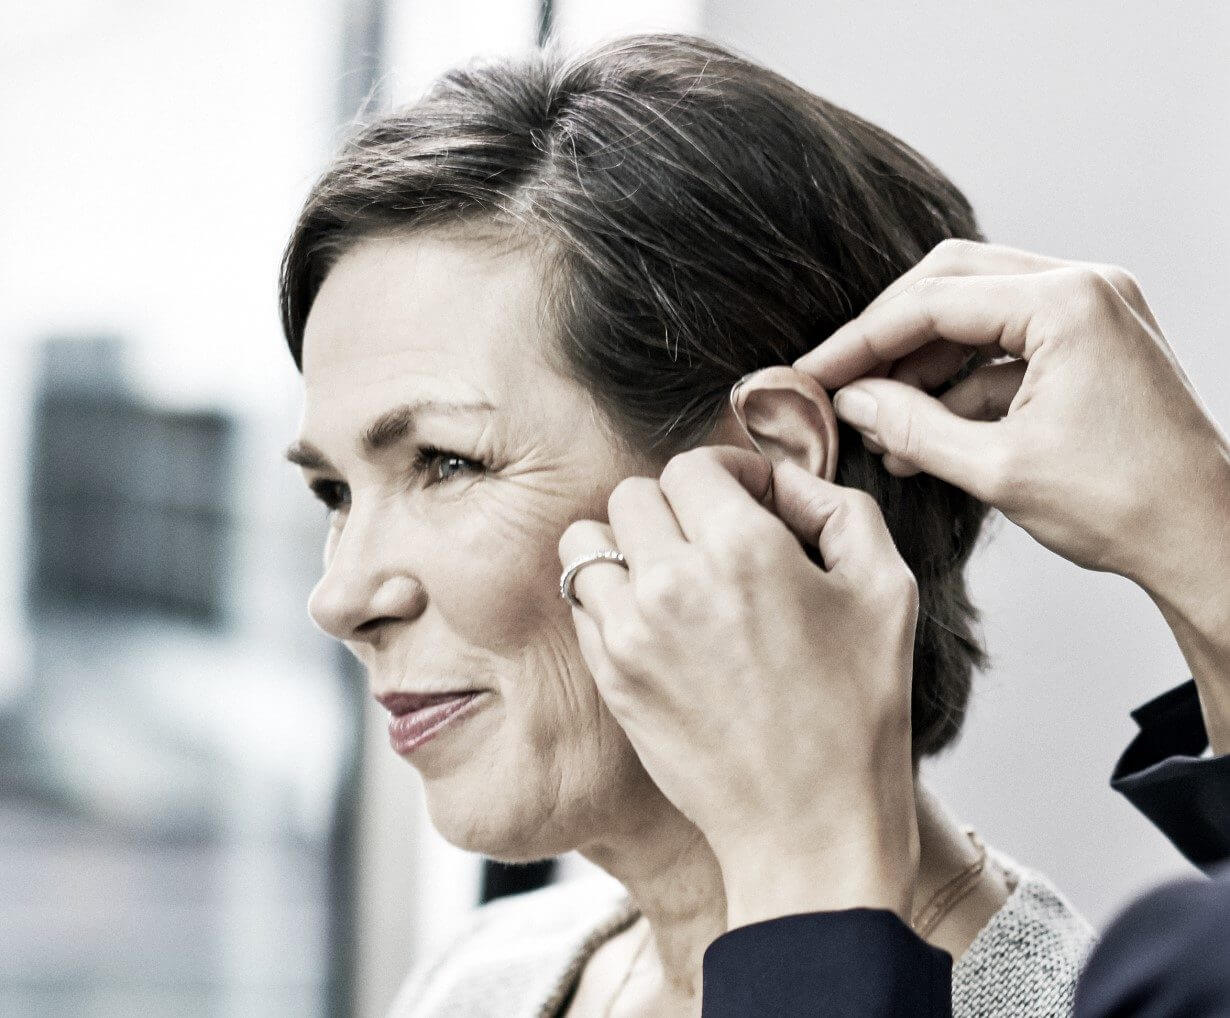 Hörgeräte helfen bei Hörverlust